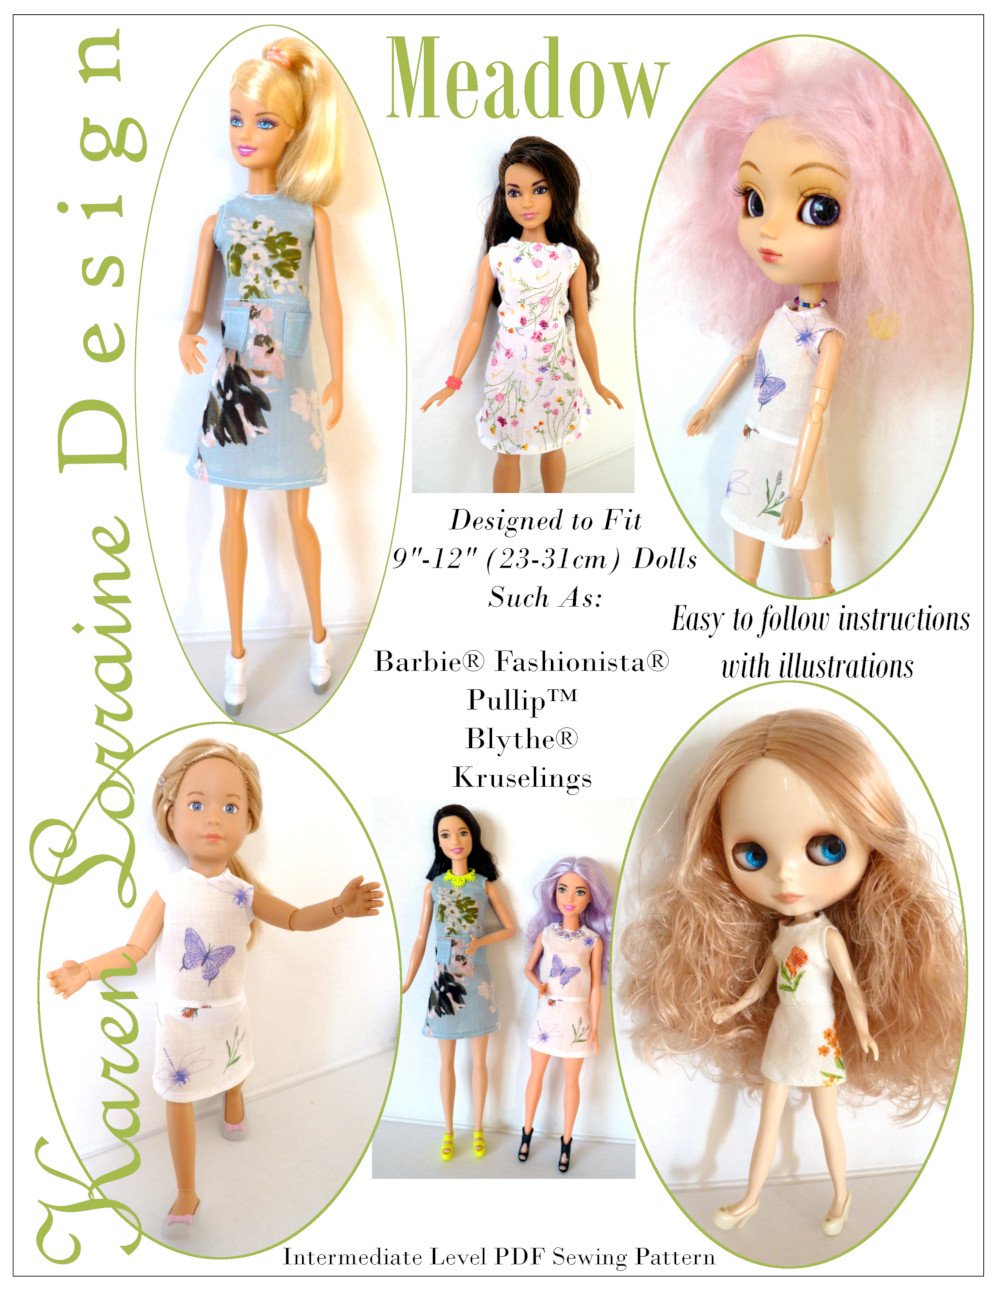 Karen Lorraine Design Meadow Doll Clothes Pattern 9-12 inch